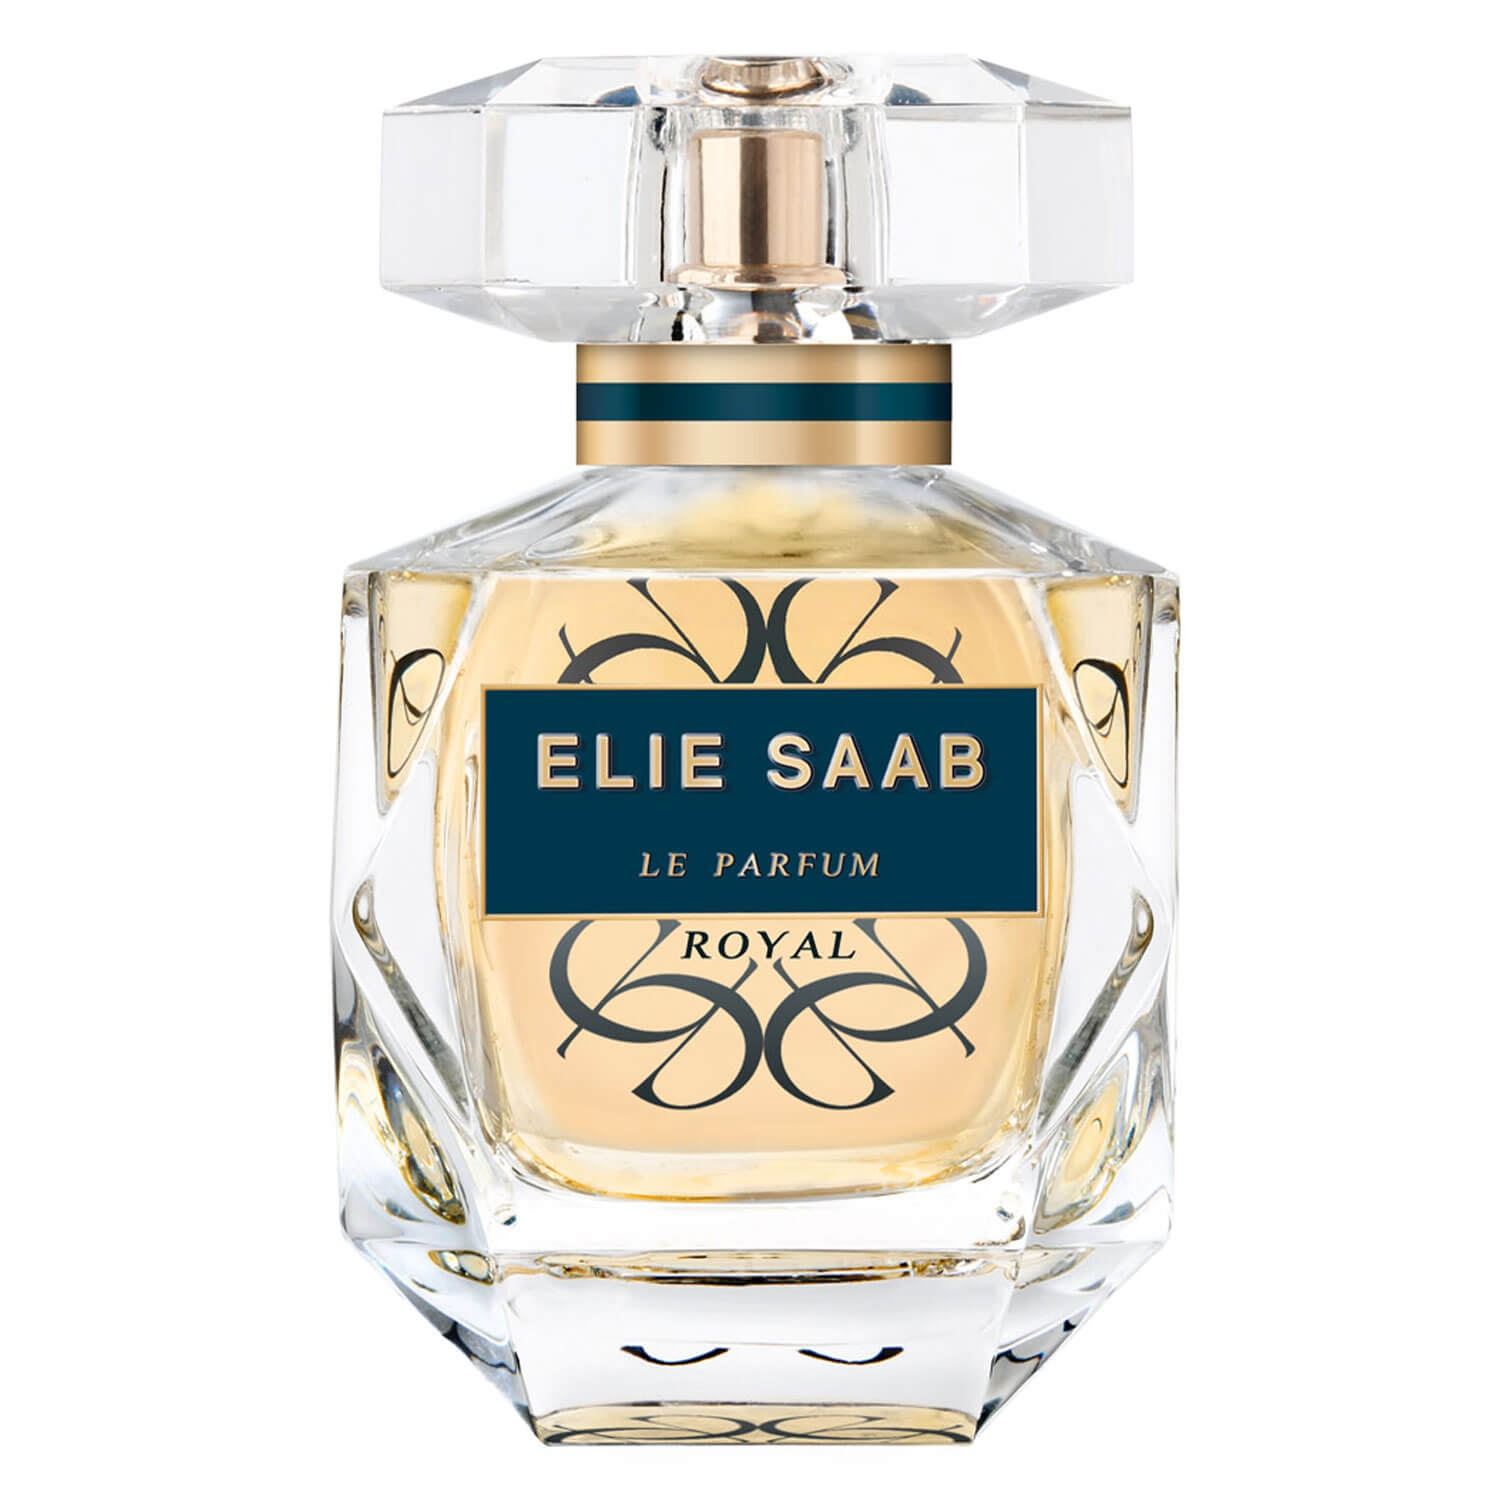 Produktbild von Le Parfum - Royal Eau de Parfum